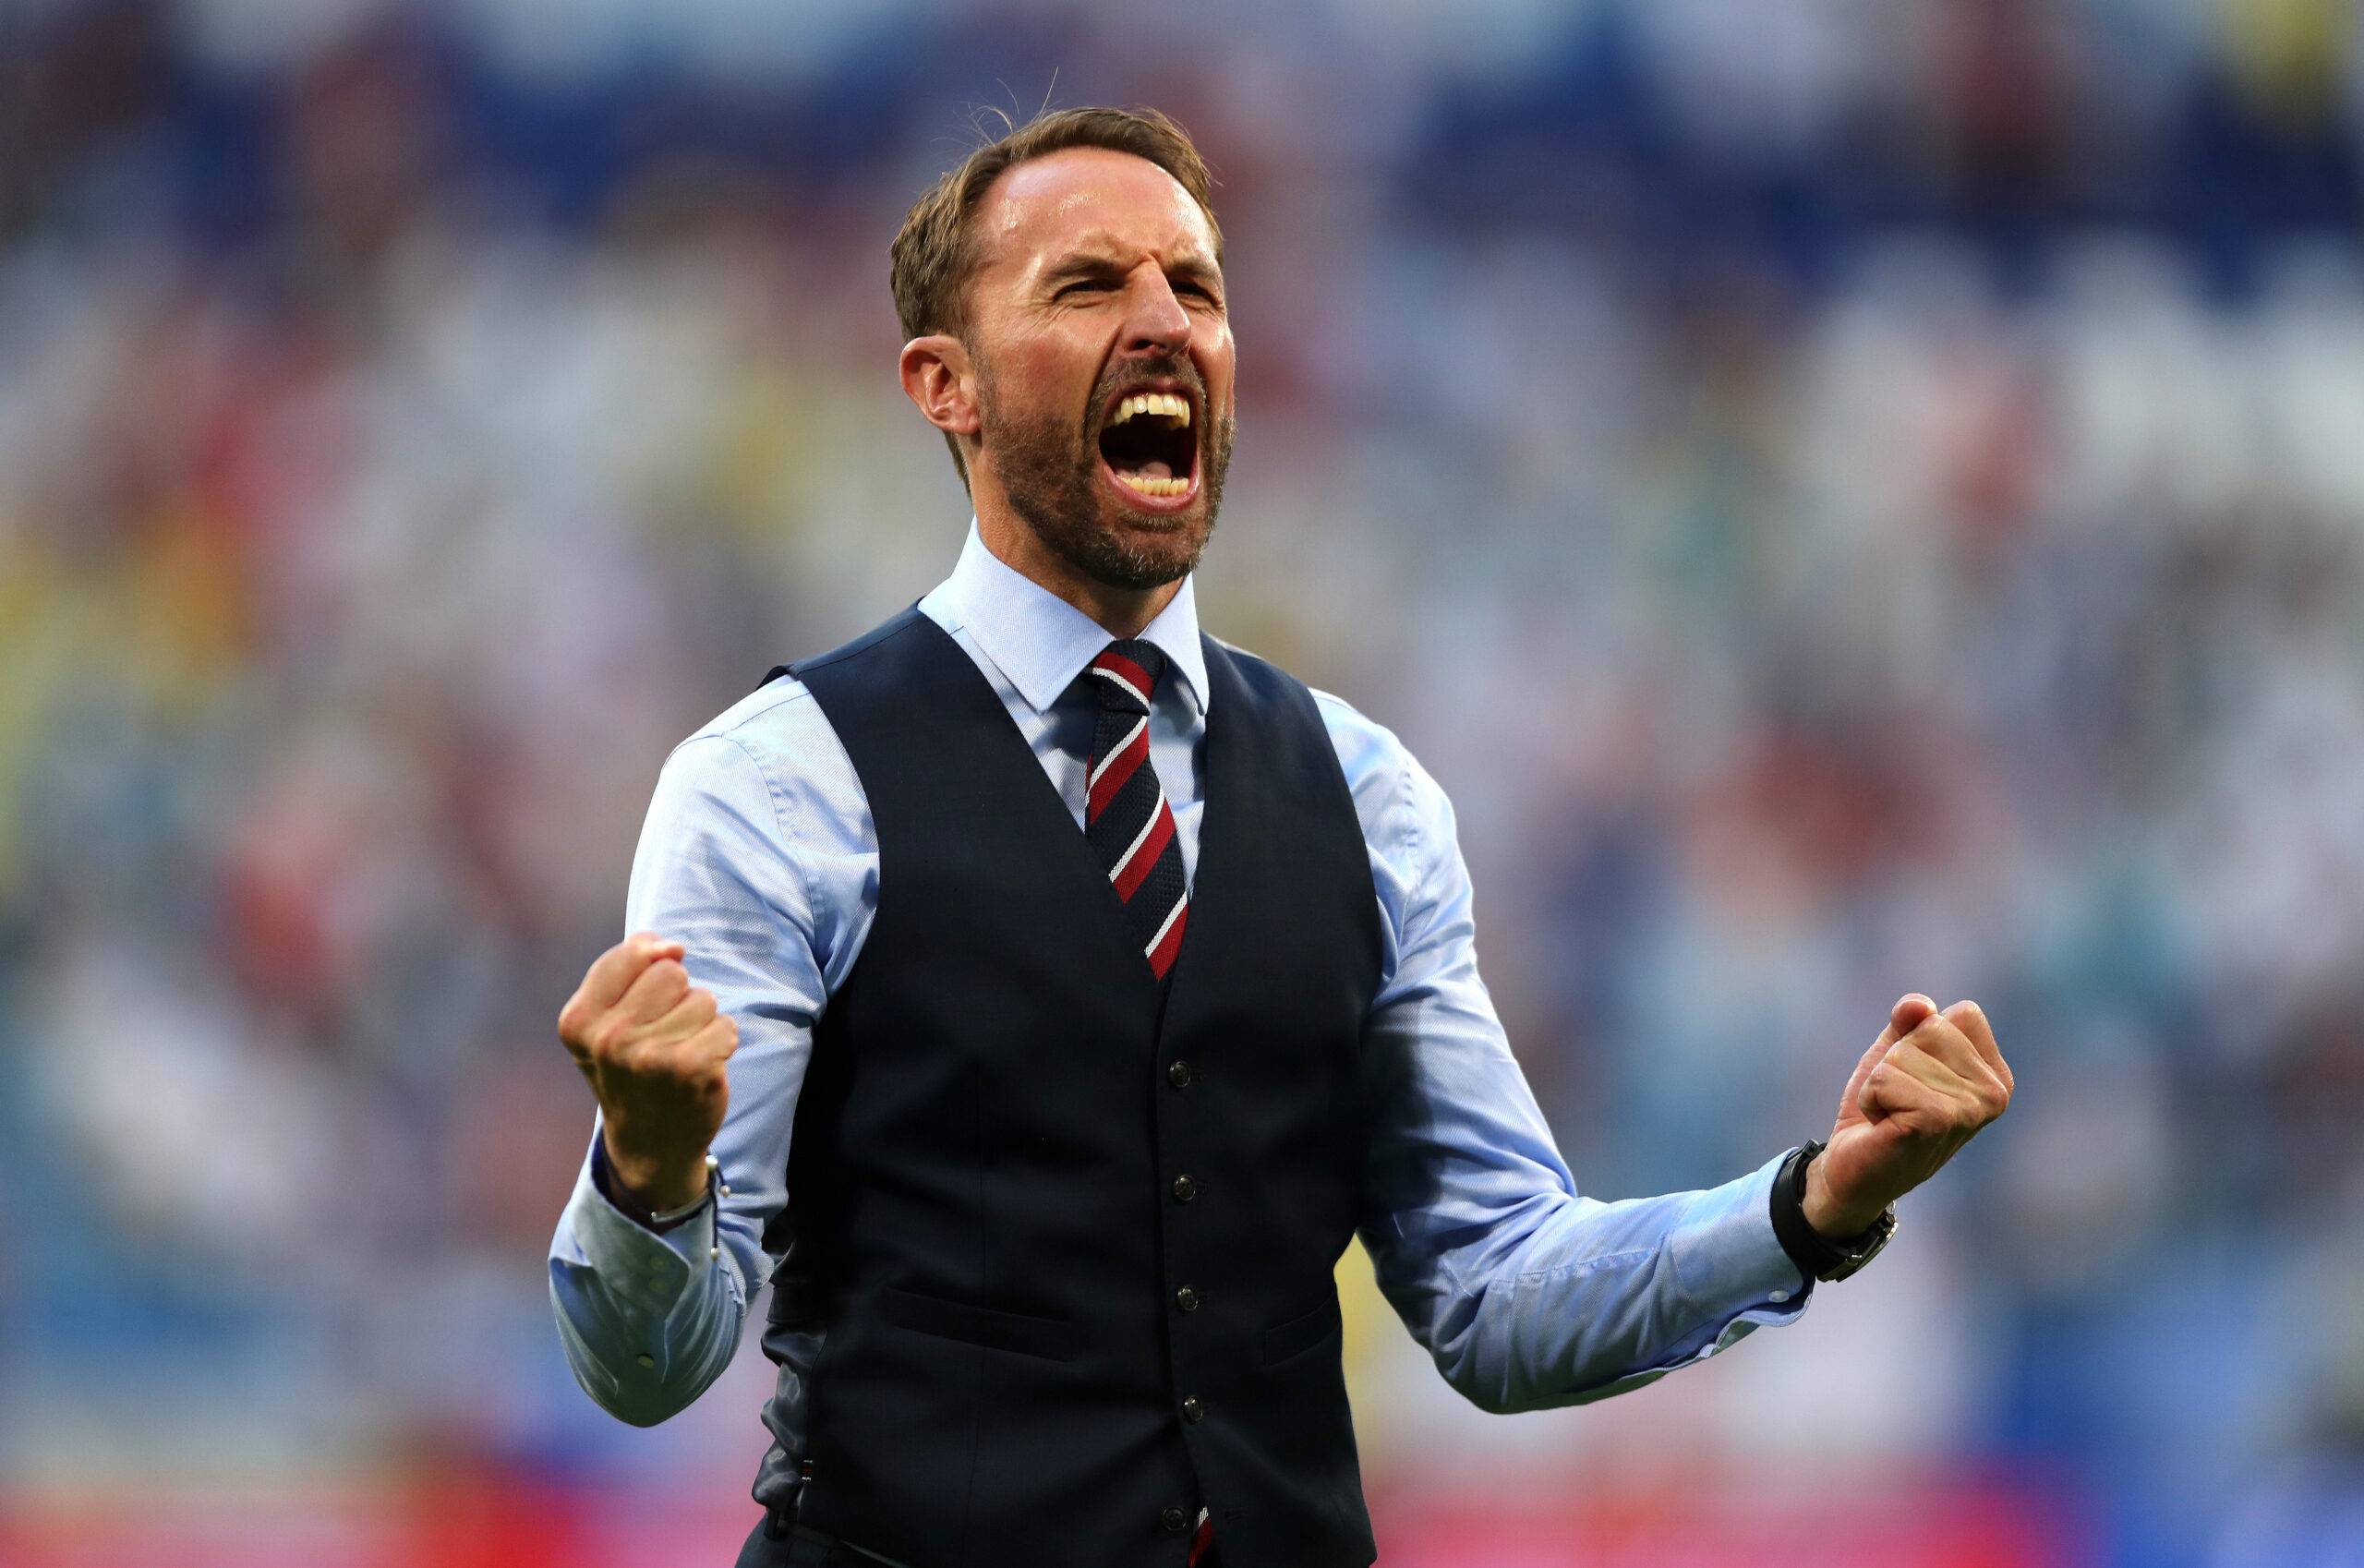 England's Southgate celebrates